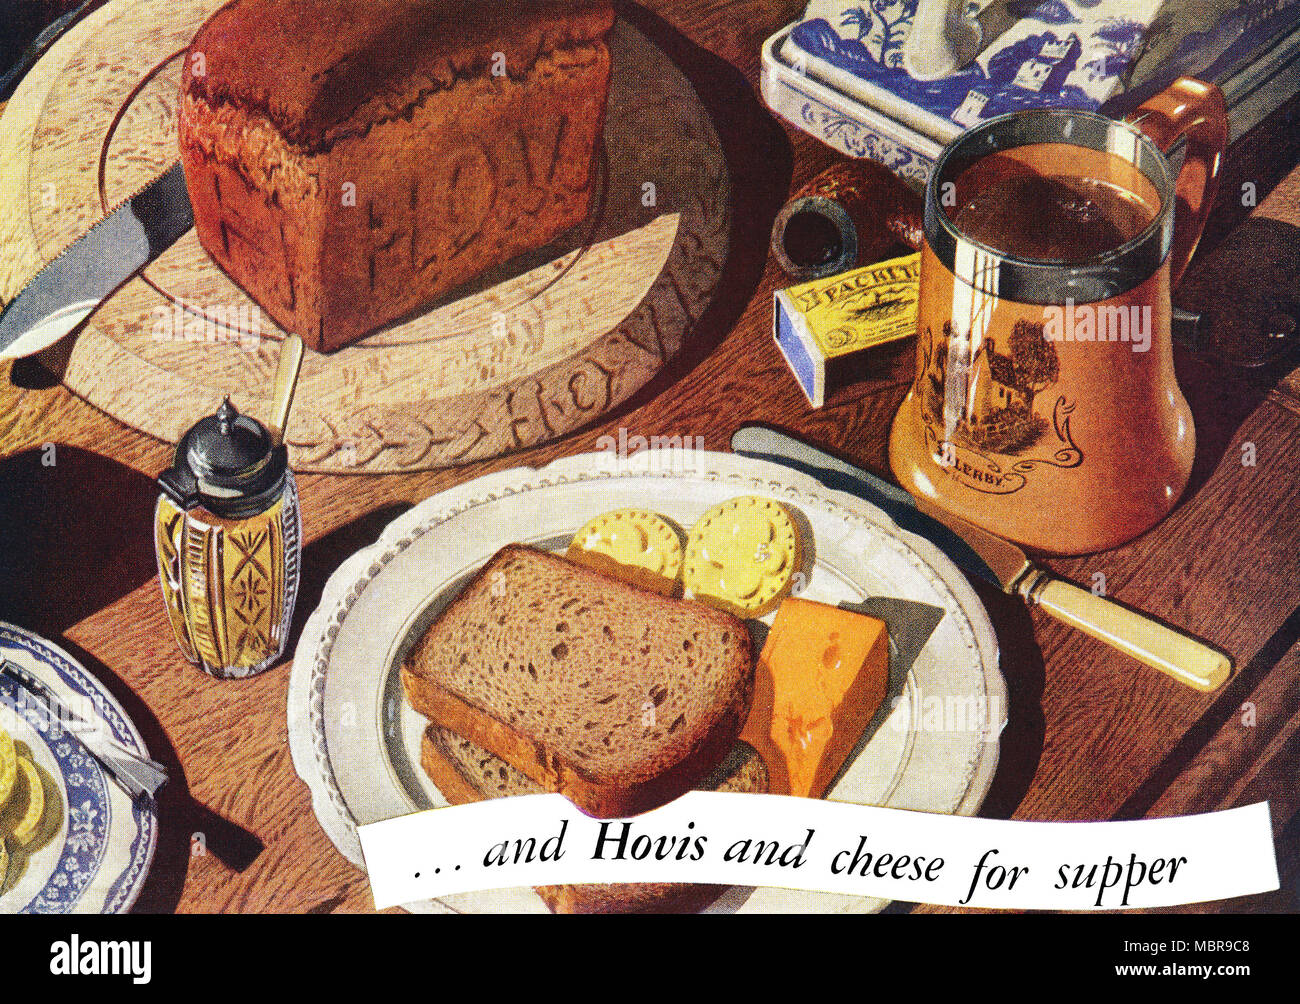 1949 britischen Werbung für Hovis Brot. Stockfoto